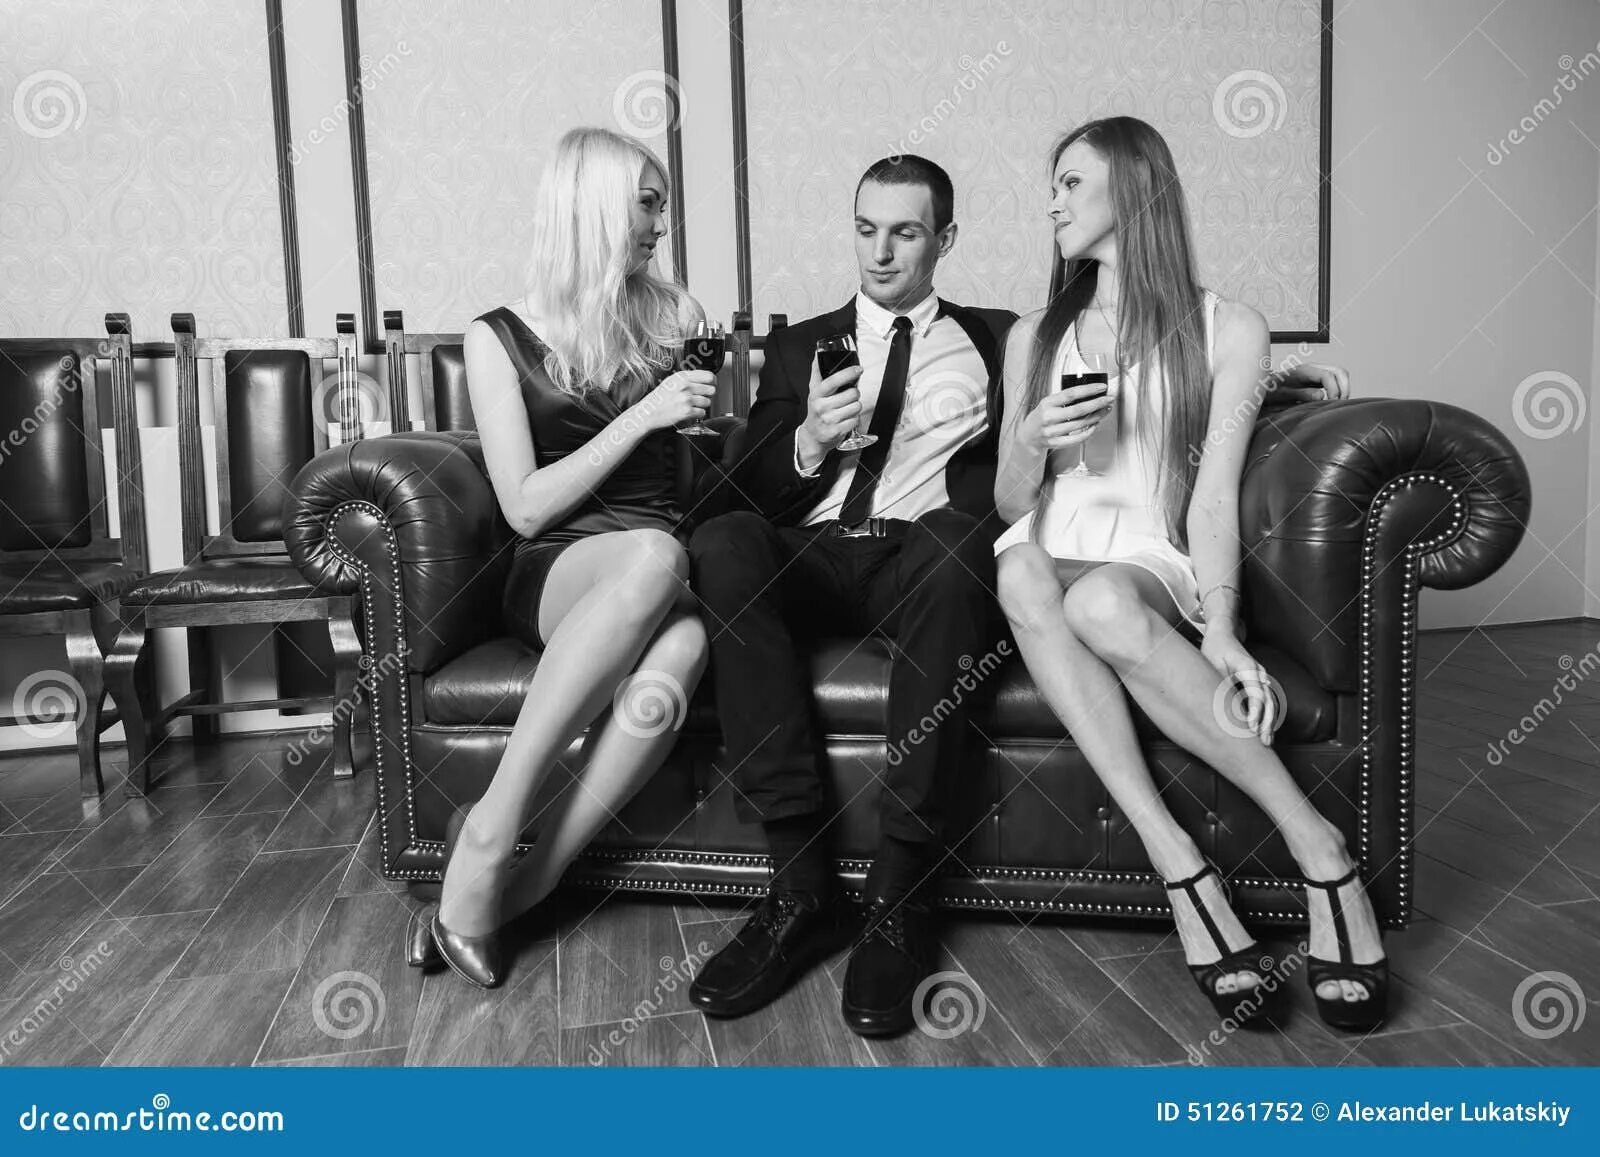 Девушка и 2 мужчины видео. Две девушки сидят. Две девушки сидят на мужчине. Мужчина в костюме с двумя девушками. Фотосессия две девушки и один парень.